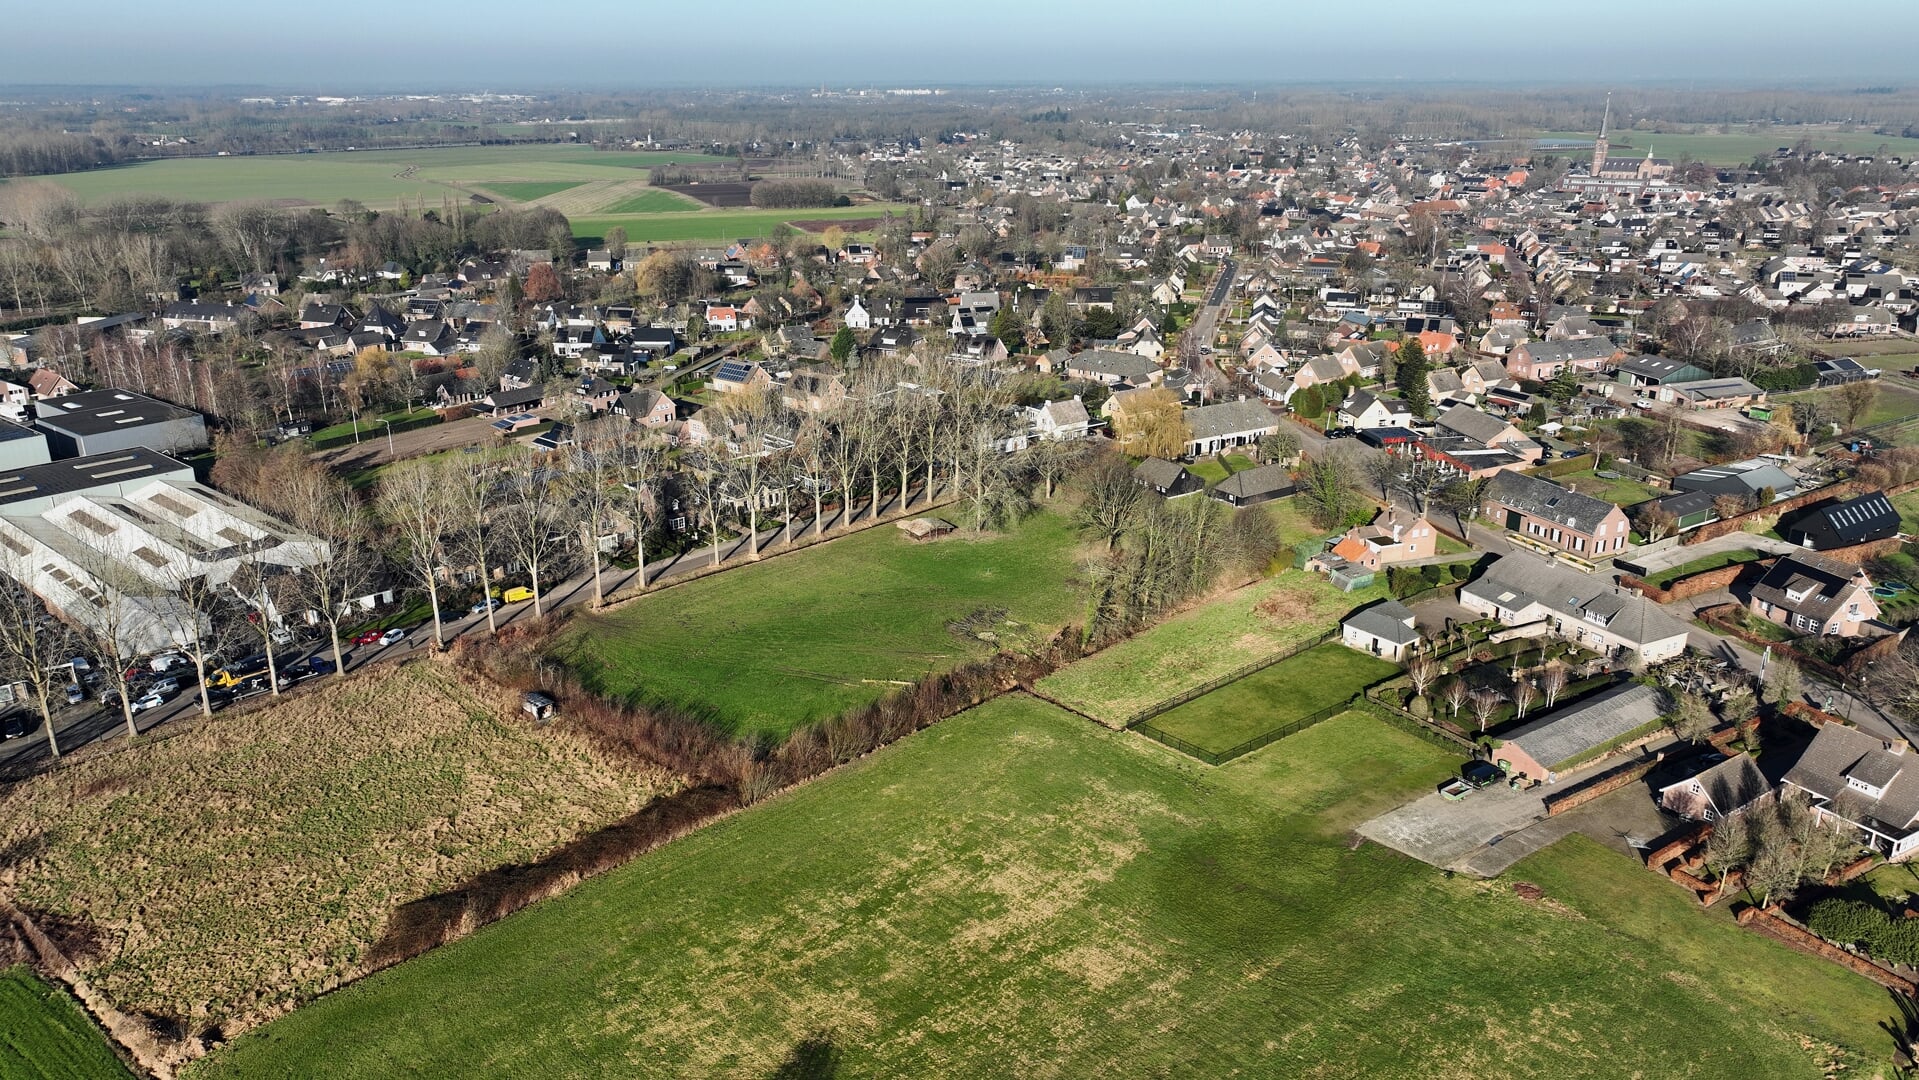 Het beoogde bouwplan in de oksel van de Hamsestraat en Roderweg moet 111 woningen toevoegen aan het huizenbestand in Liempde. Ook komen er vier woonwerkkavels te liggen.